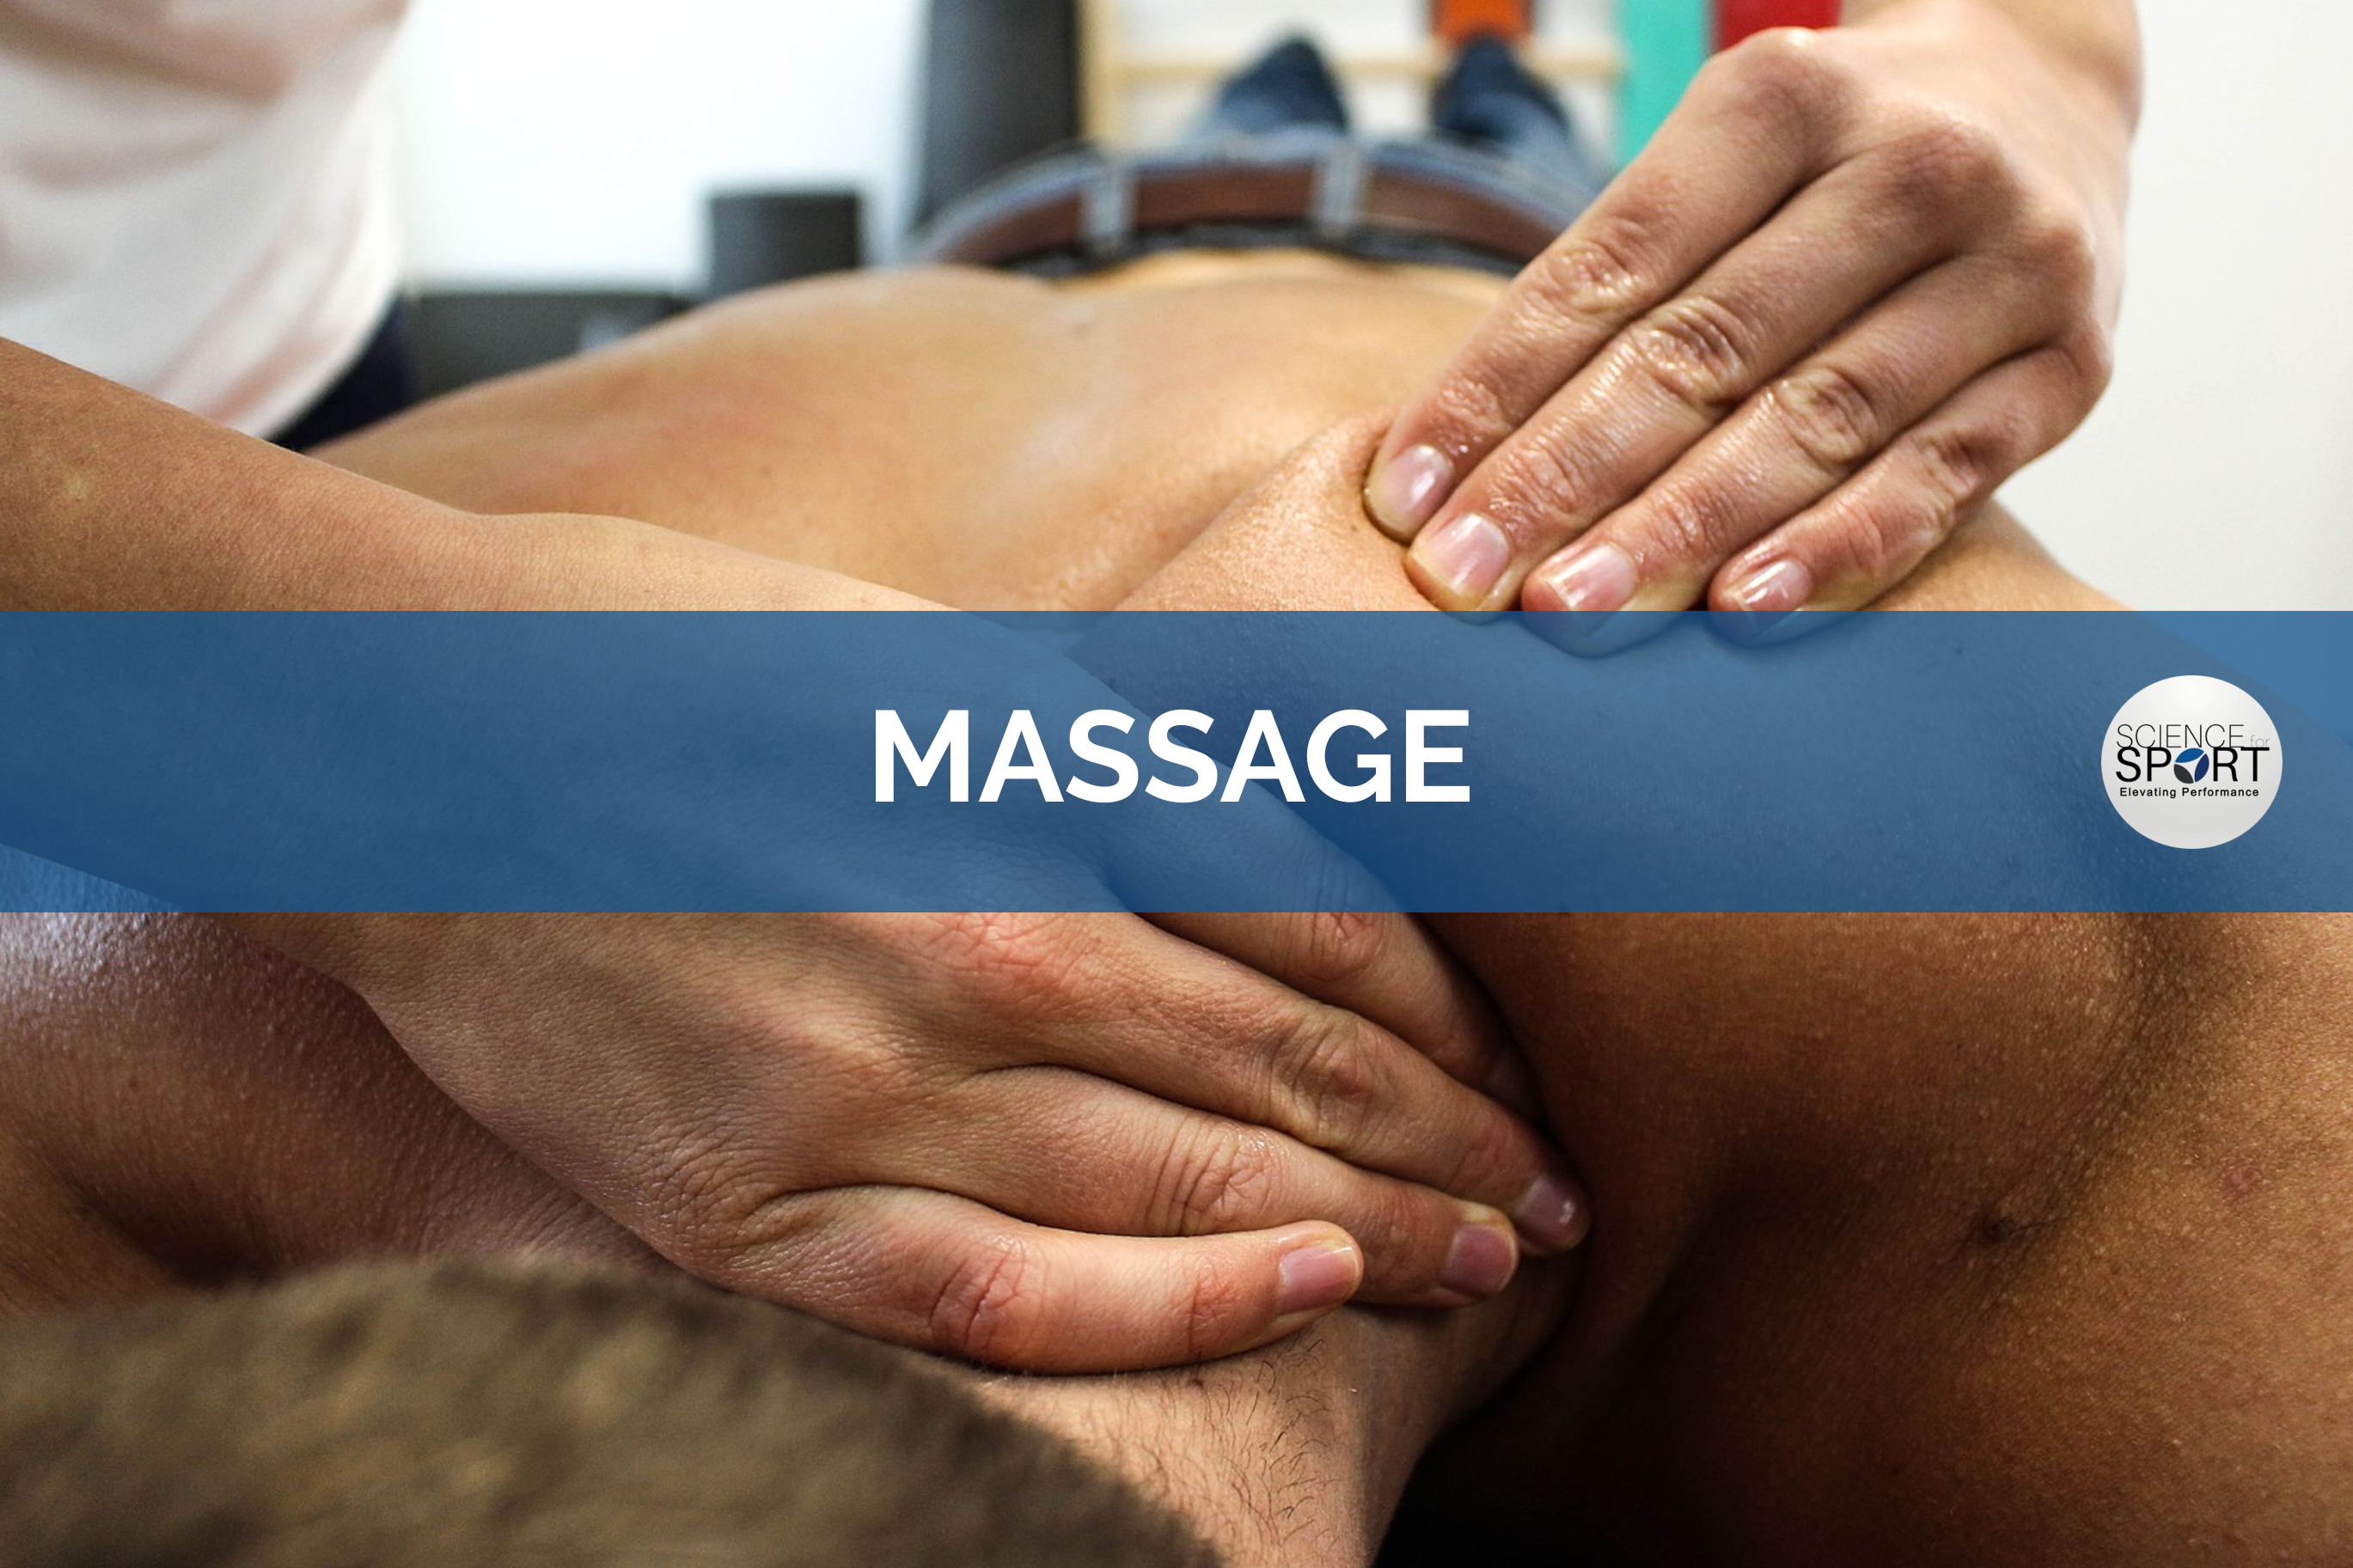 Hướng dẫn cách massage giúp cải thiện sinh lý